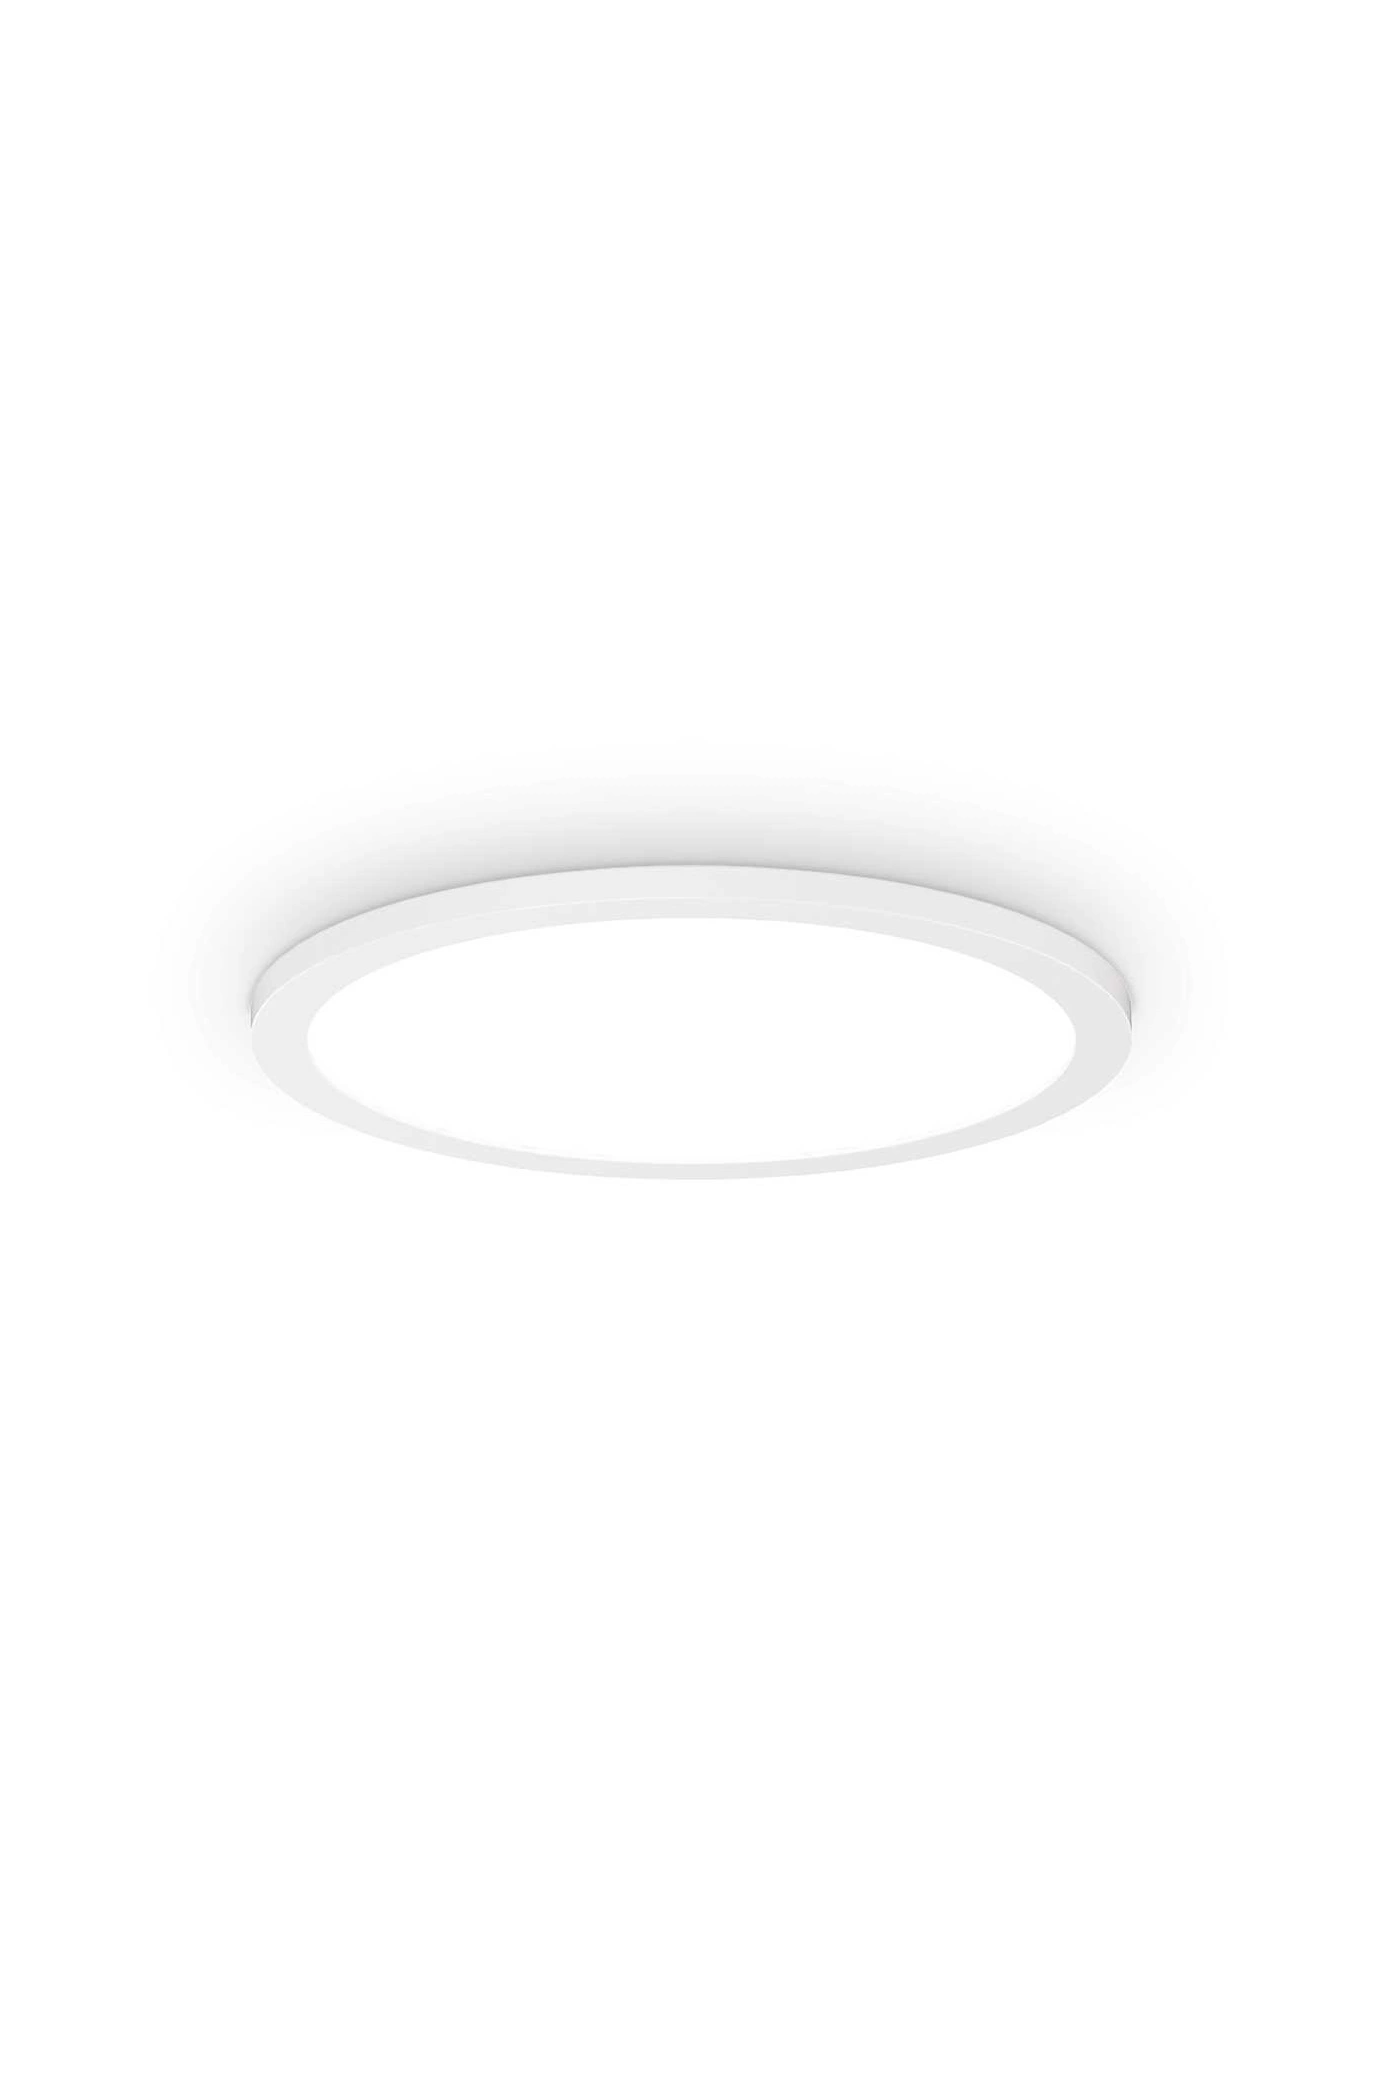   
                        
                        Светильник потолочный IDEAL LUX (Италия) 10275    
                         в стиле Модерн.  
                        Тип источника света: встроенный led-модуль, несъемный.                         Форма: Круг.                         Цвета плафонов и подвесок: Белый.                         Материал: Алюминий, Пластик.                          фото 1